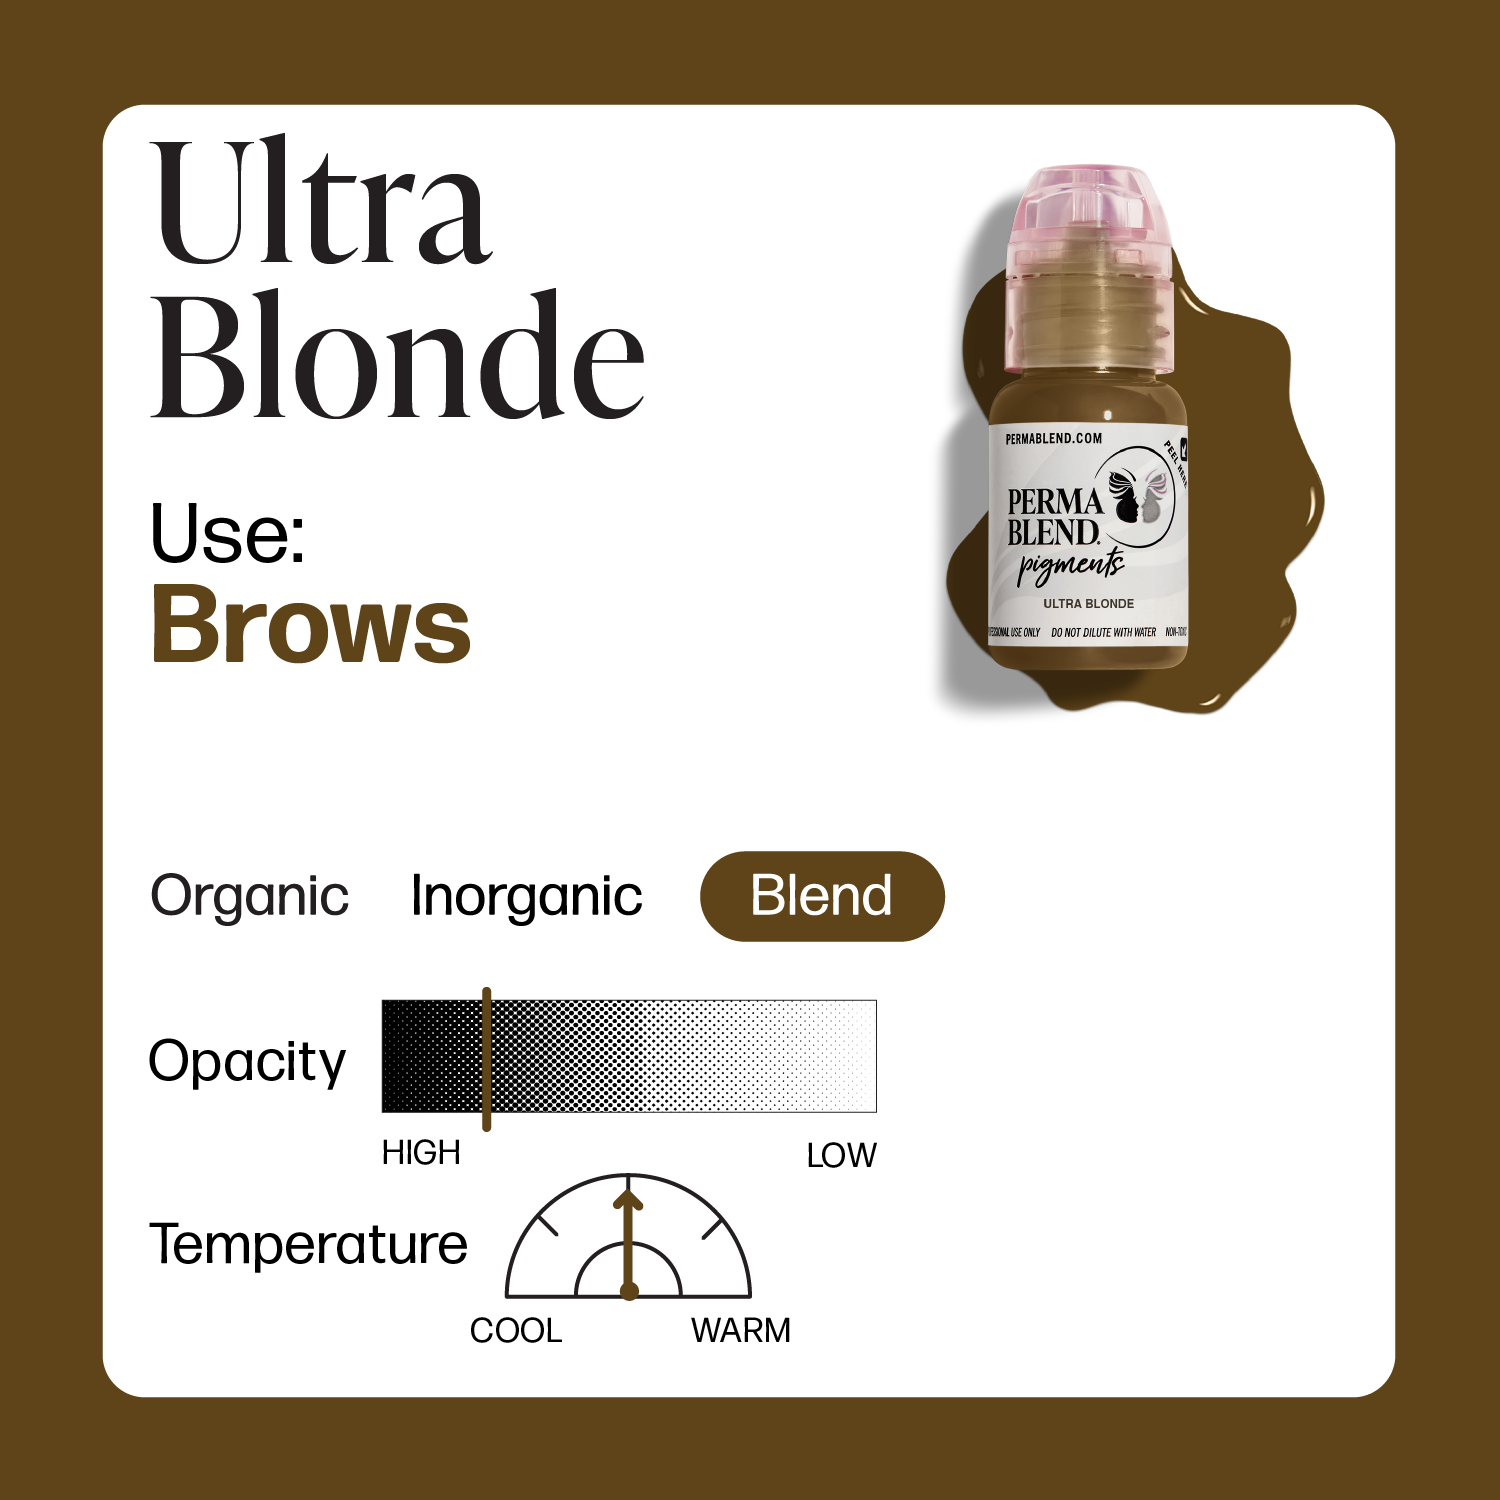 Ultra Blonde